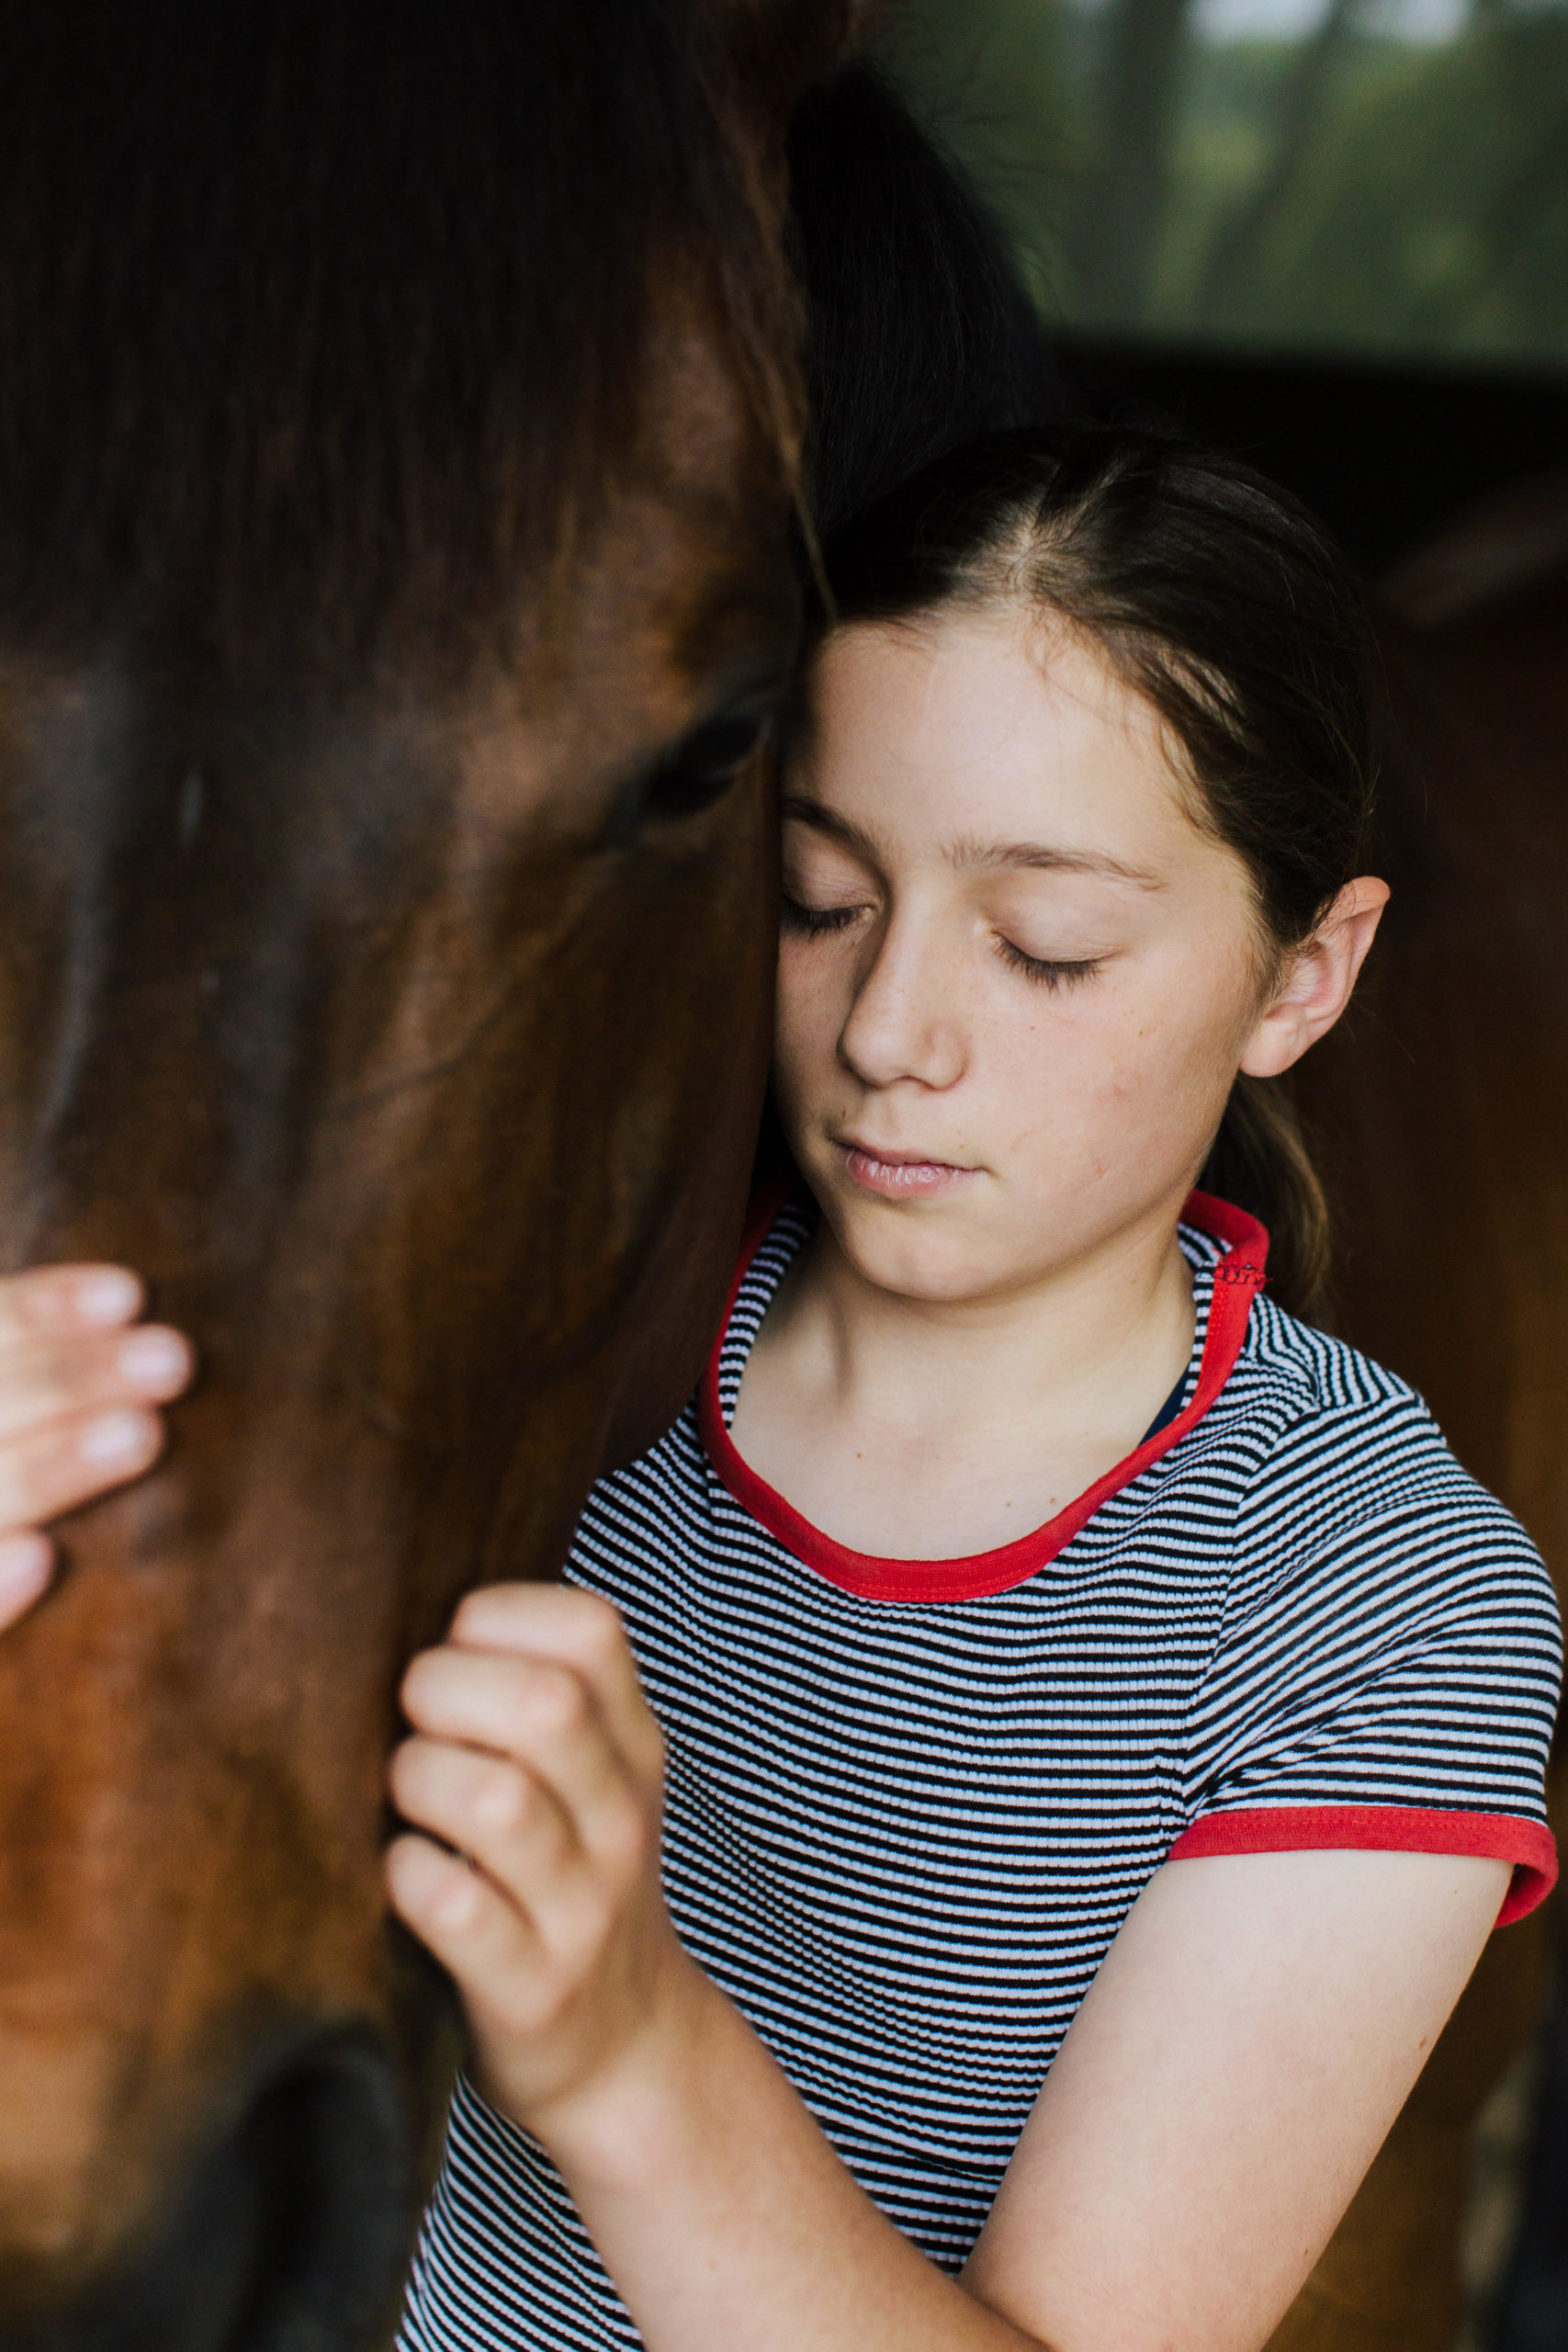 Girl kissing horse